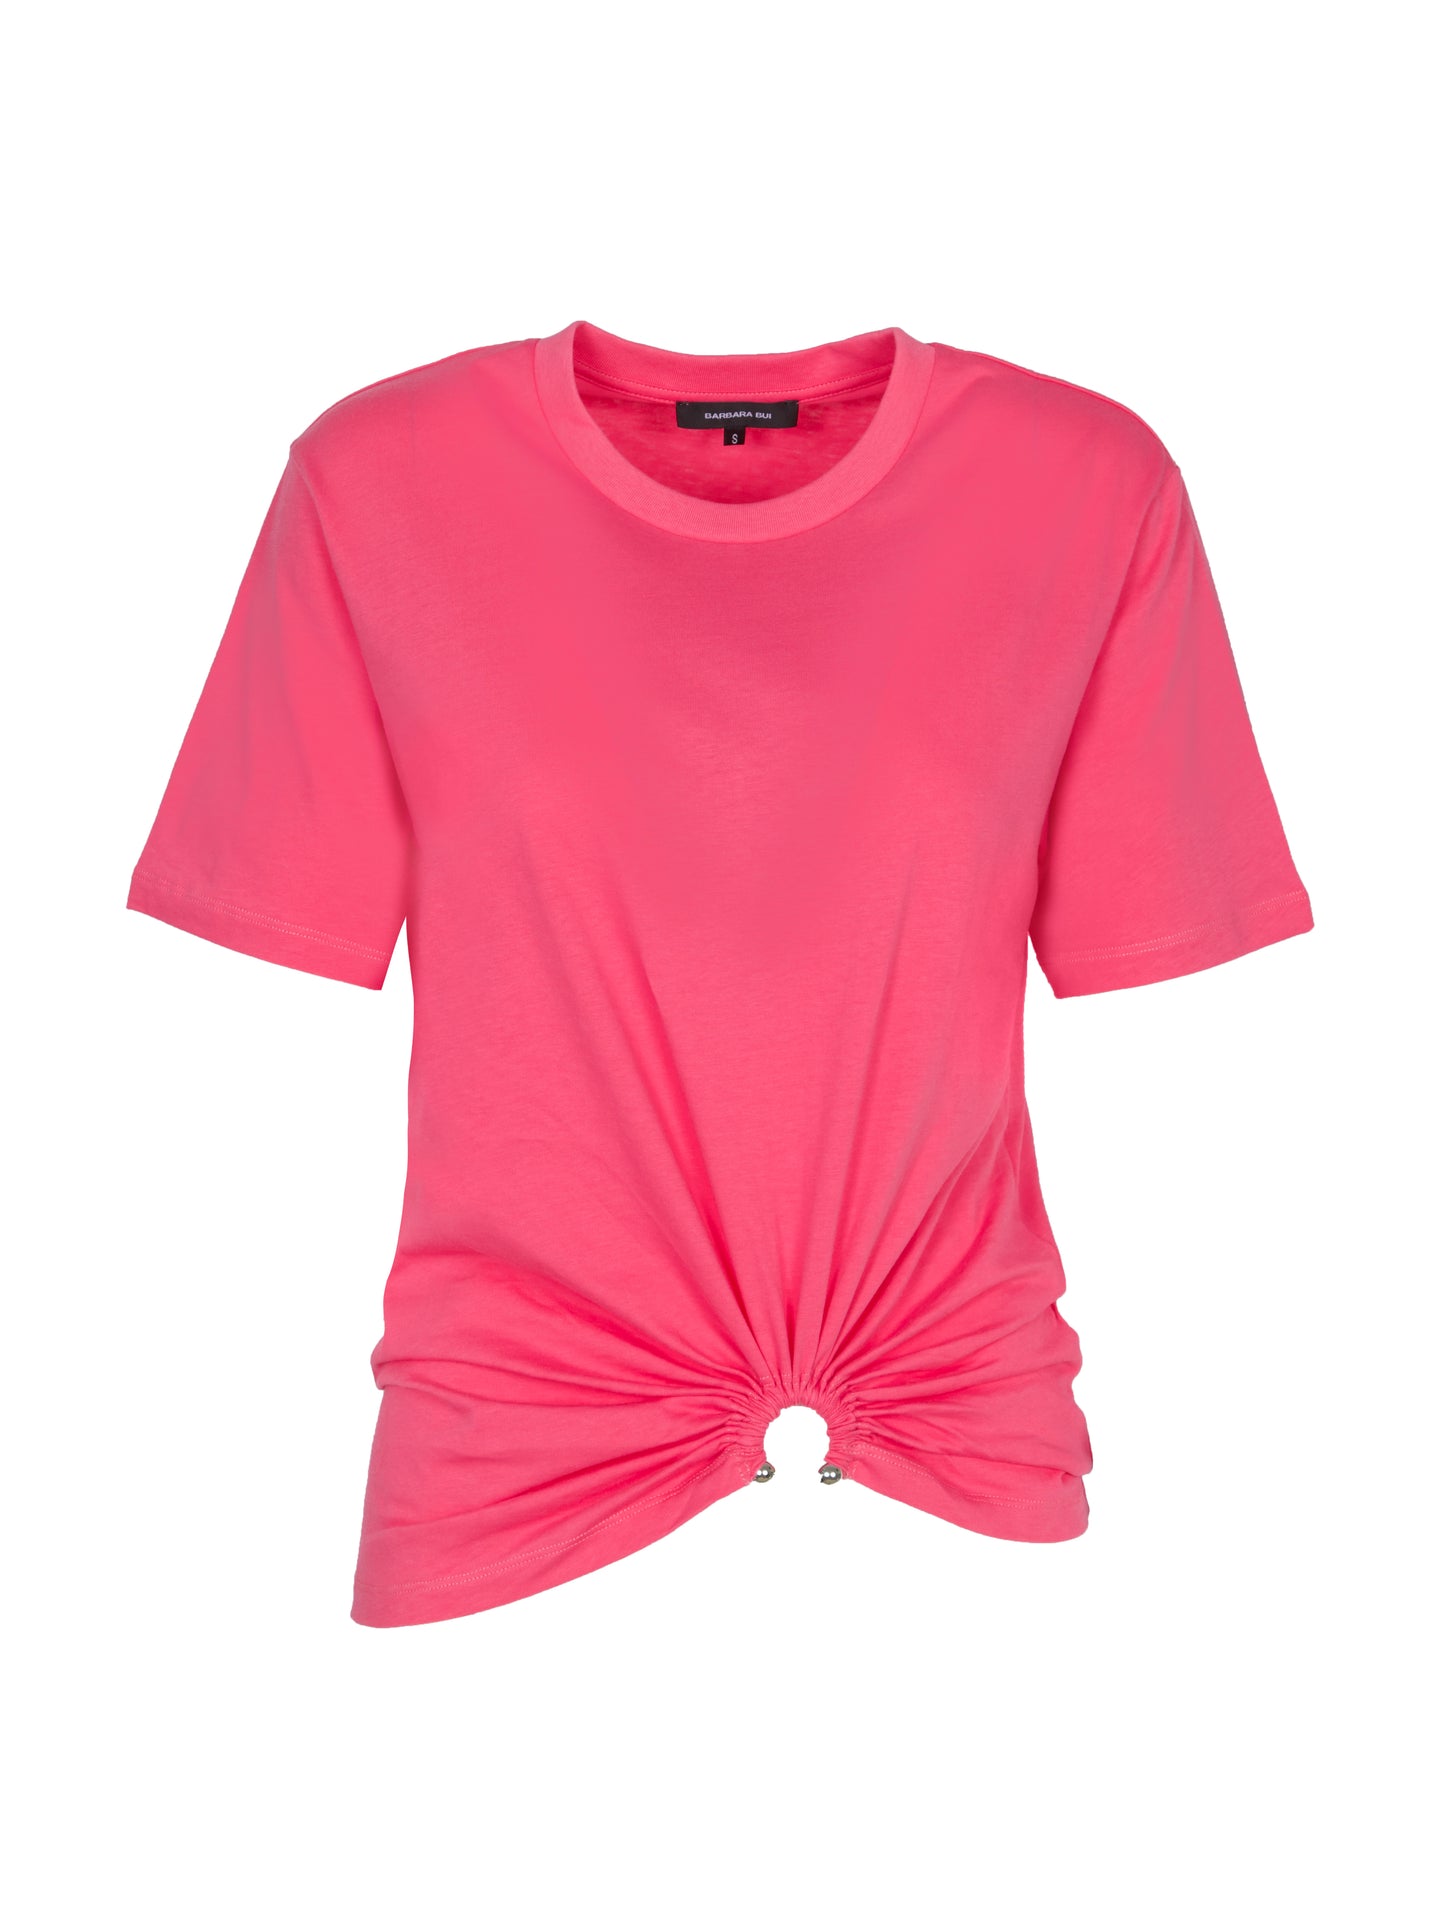 BARBARA BUI T-Shirt in pink